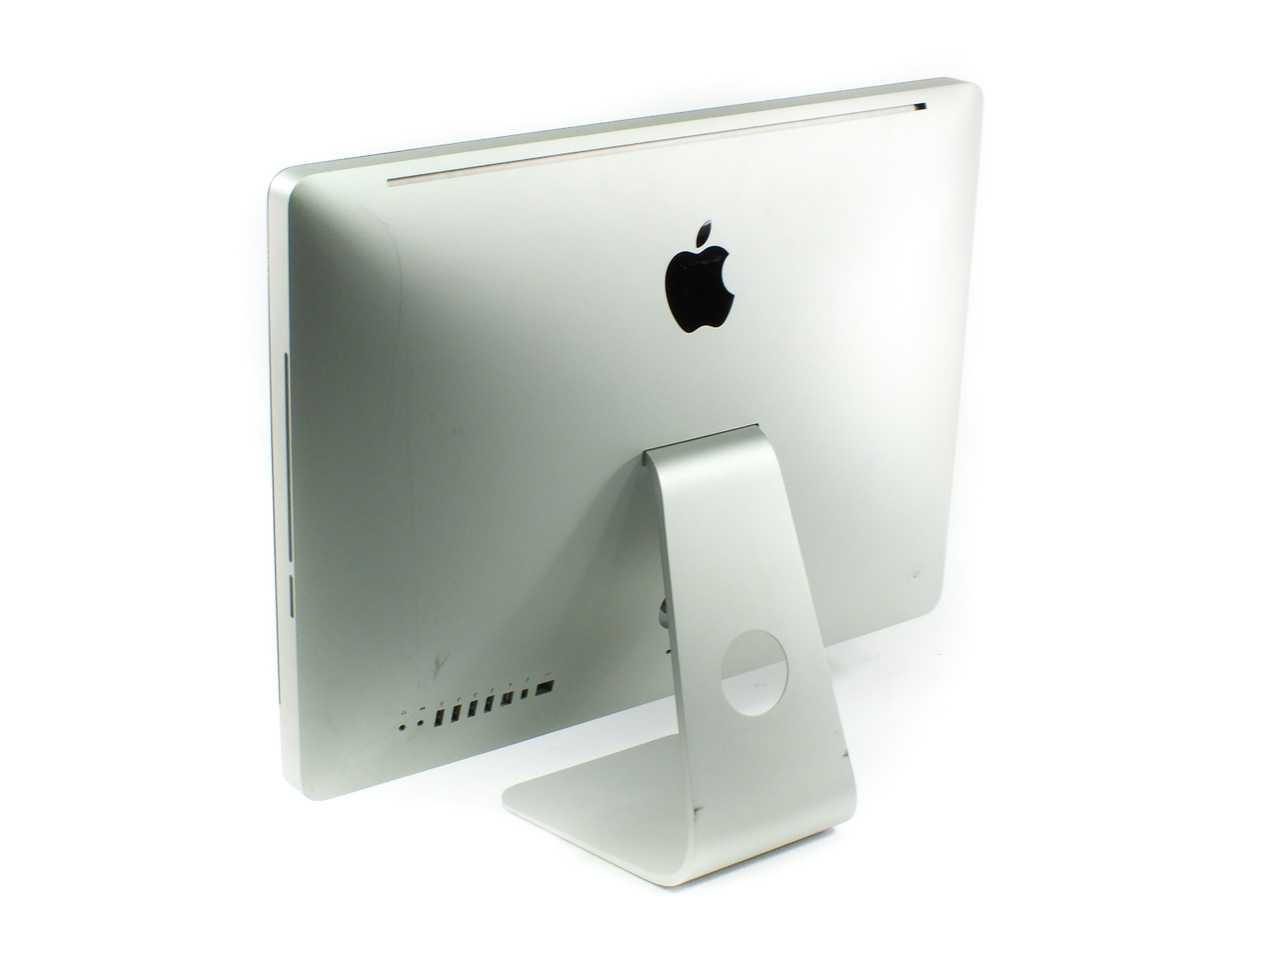 2023年新作 iMac メモリ12GB増設済み iMac mid Mid 2011 